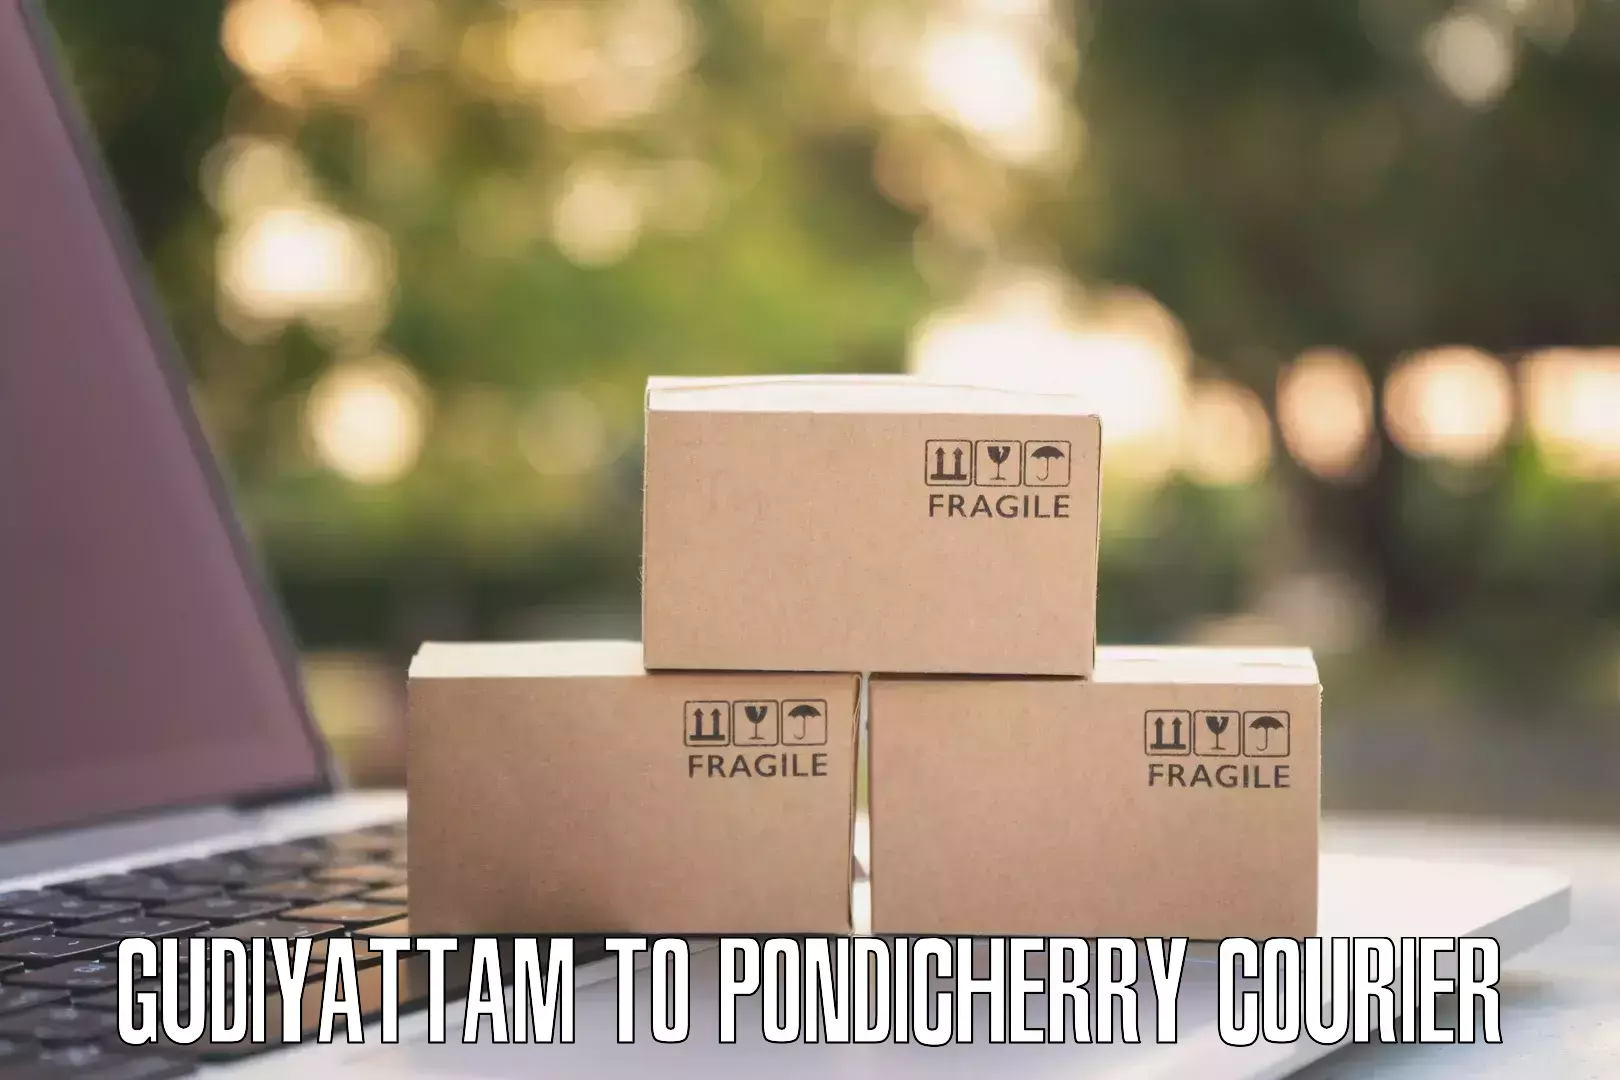 24/7 courier service Gudiyattam to NIT Puducherry